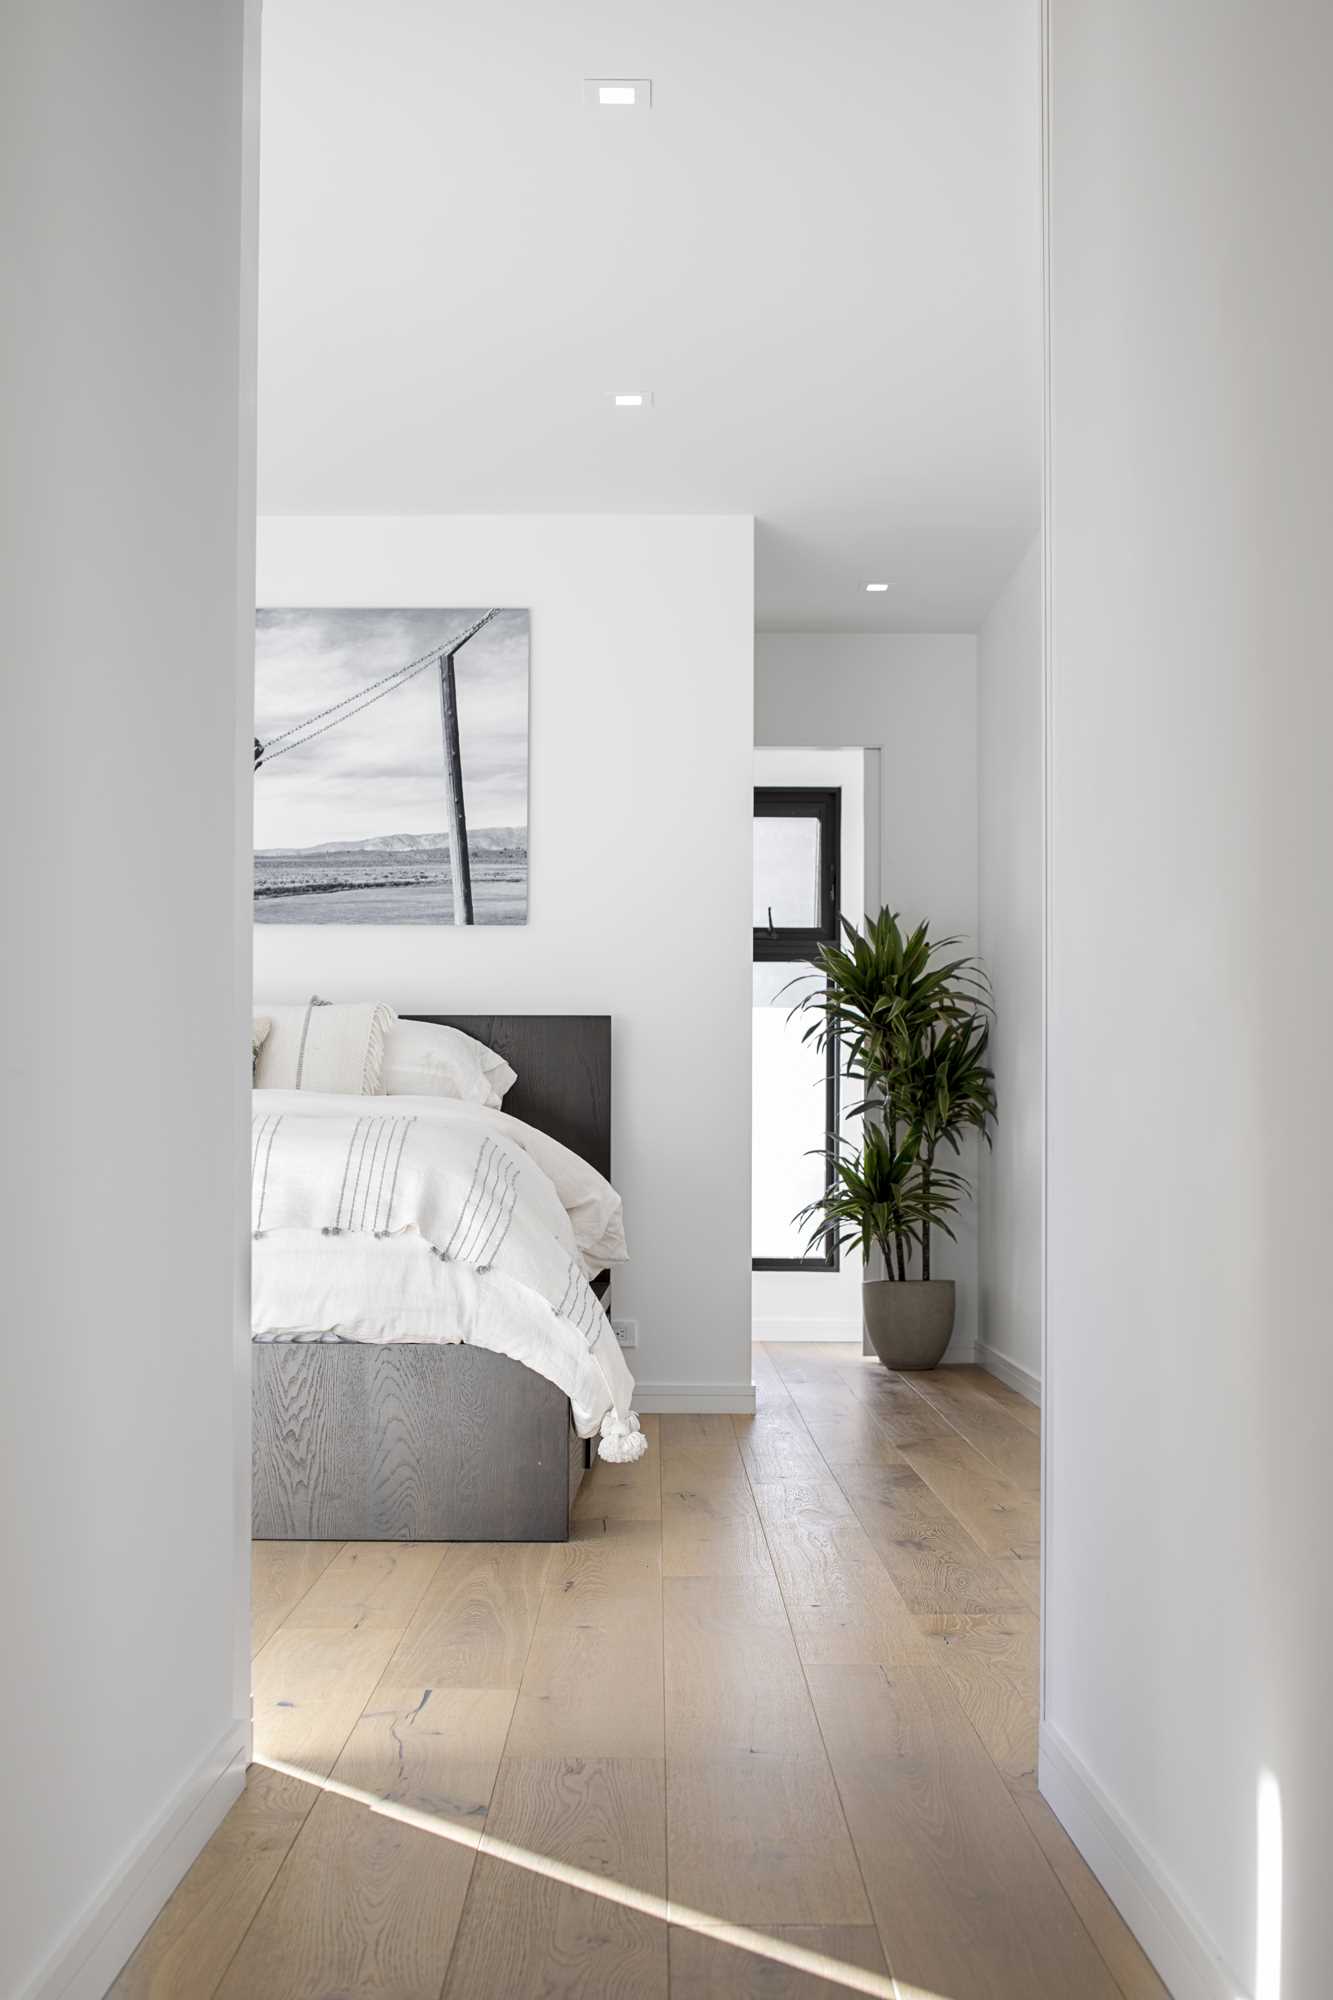 Acest dormitor are un design minimal, cu pereți albi, în timp ce podeaua din lemn adaugă un sentiment de căldură spațiului.